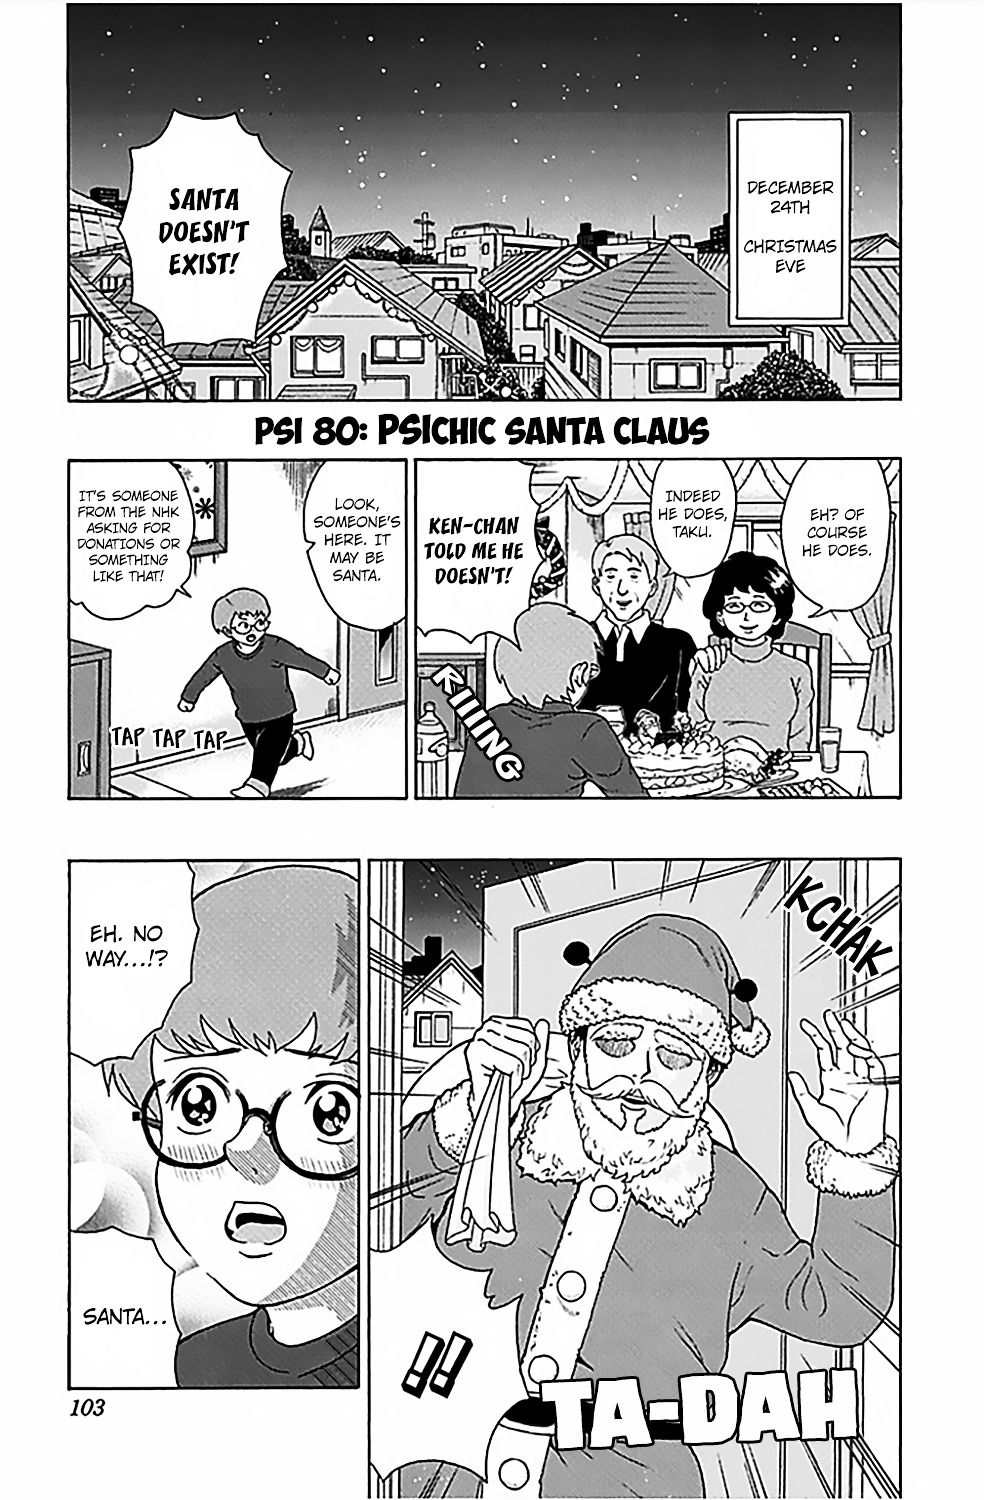 Saiki Kusuo No Sainan Vol.8 Chapter 80 V2 : Psichic Santa Claus - Picture 2